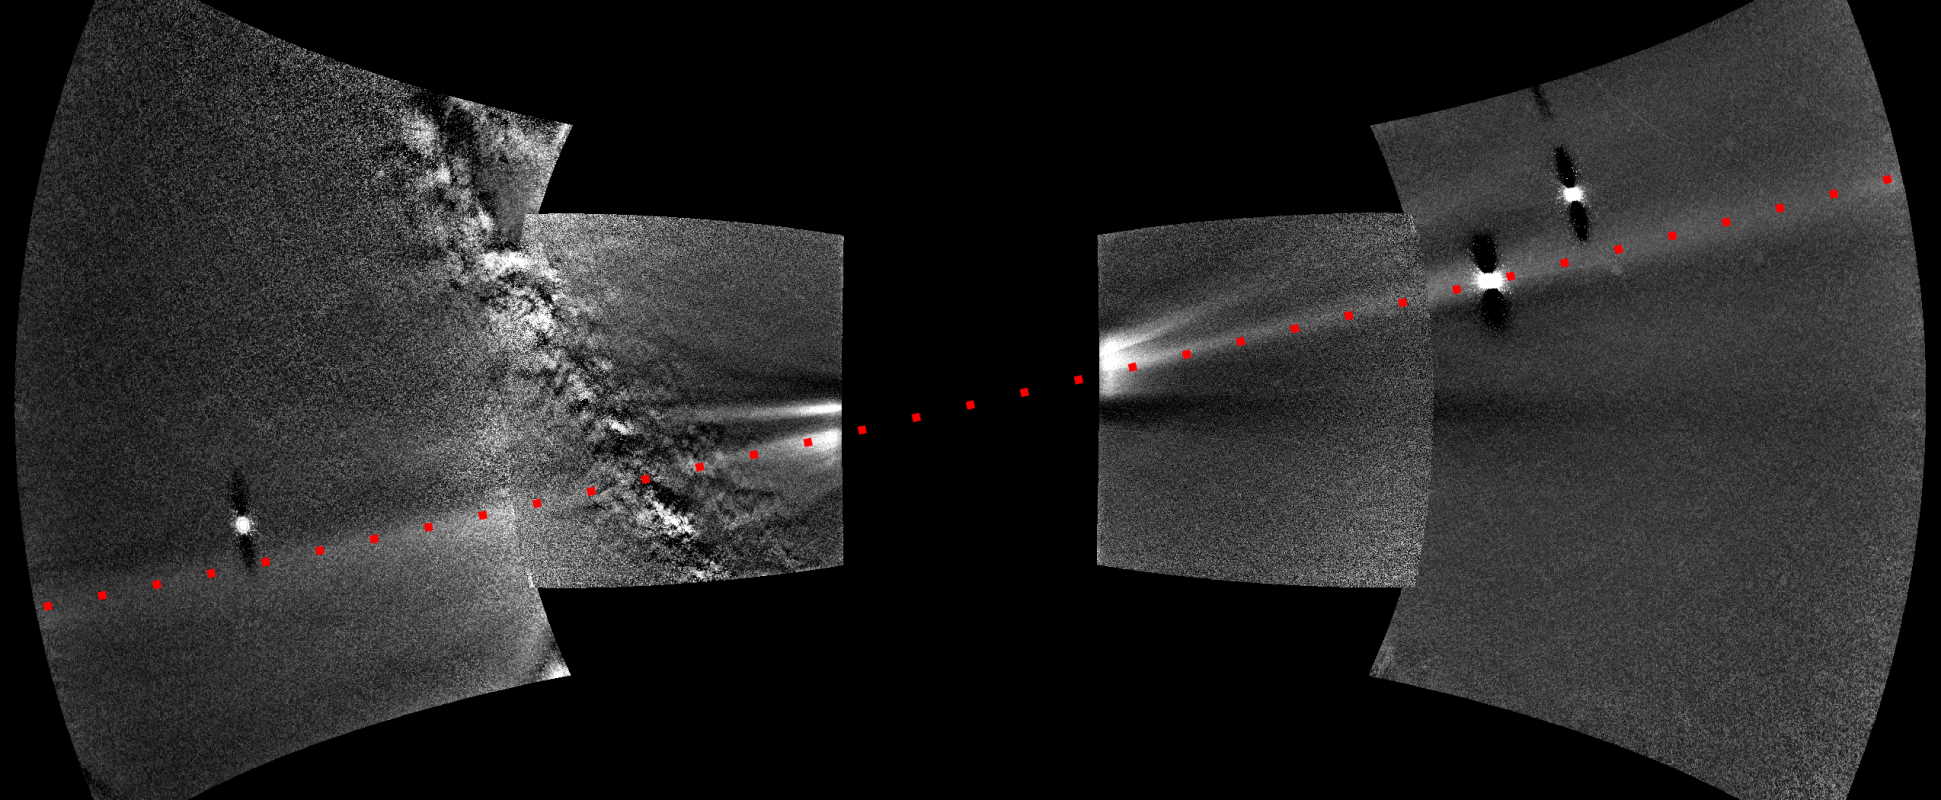 Композитний знімок з чотирьох зображень. Пилове кільце тягнеться по діагоналі від нижнього лівого до правого верхнього кута, воно позначене червоною пунктирною лінією. Яскравими об’єктами є планети, зліва направо: Земля, Венера та Меркурій. Зліва видно частину Чумацького Шляху. NASA, Johns Hopkins APL, Naval Research Laboratory, Guillermo Stenborg, Brendan Gallagher / NASA